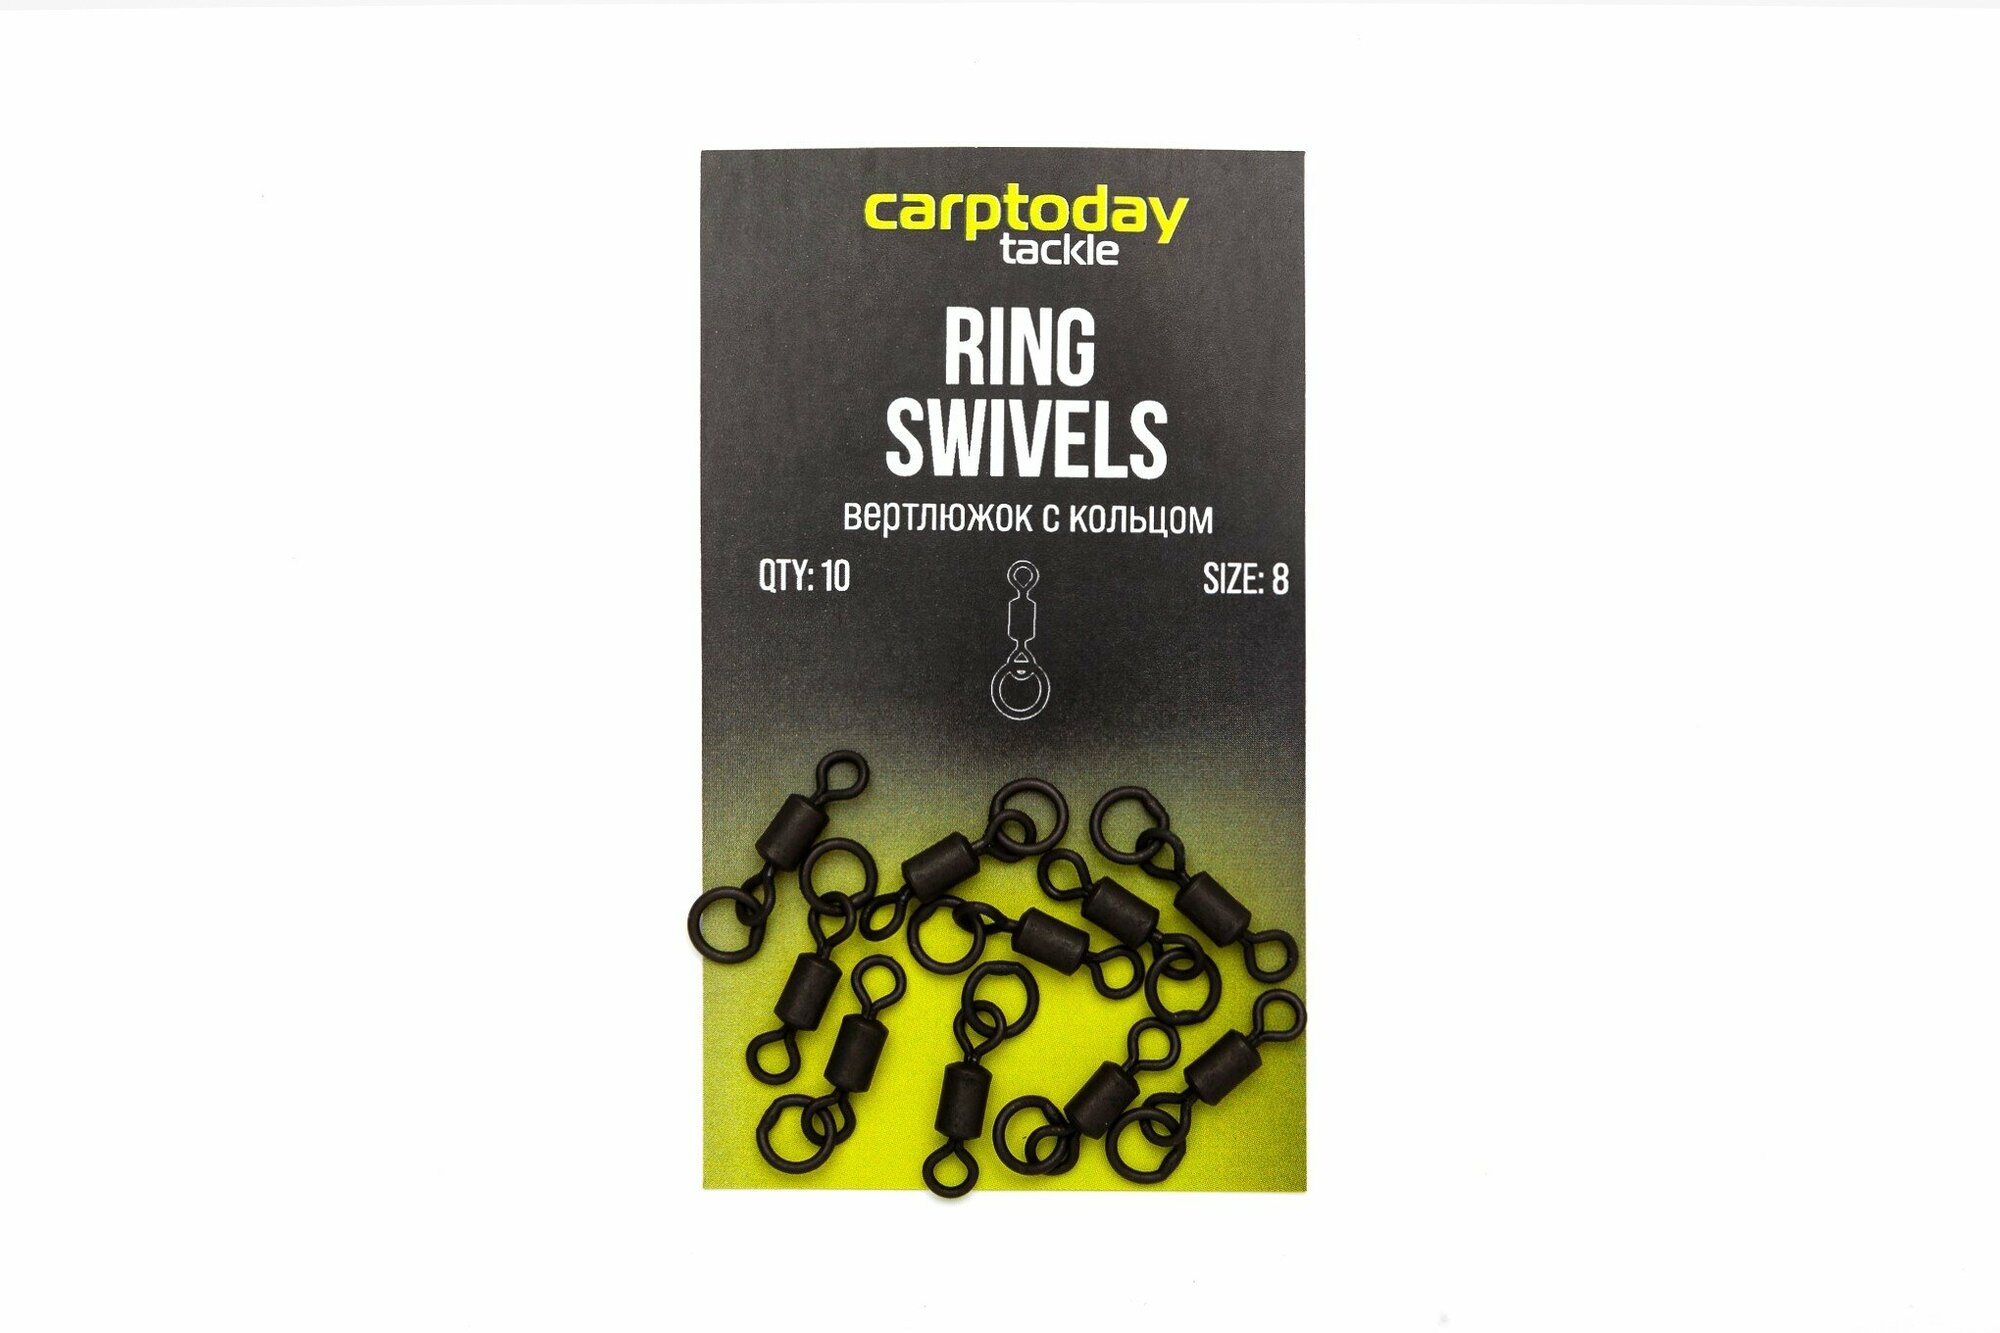 Вертлюжки с кольцом Carptoday Tackle Ring Swivels, снасти для рыбалки, карповая рыбалка, карповые монтажи